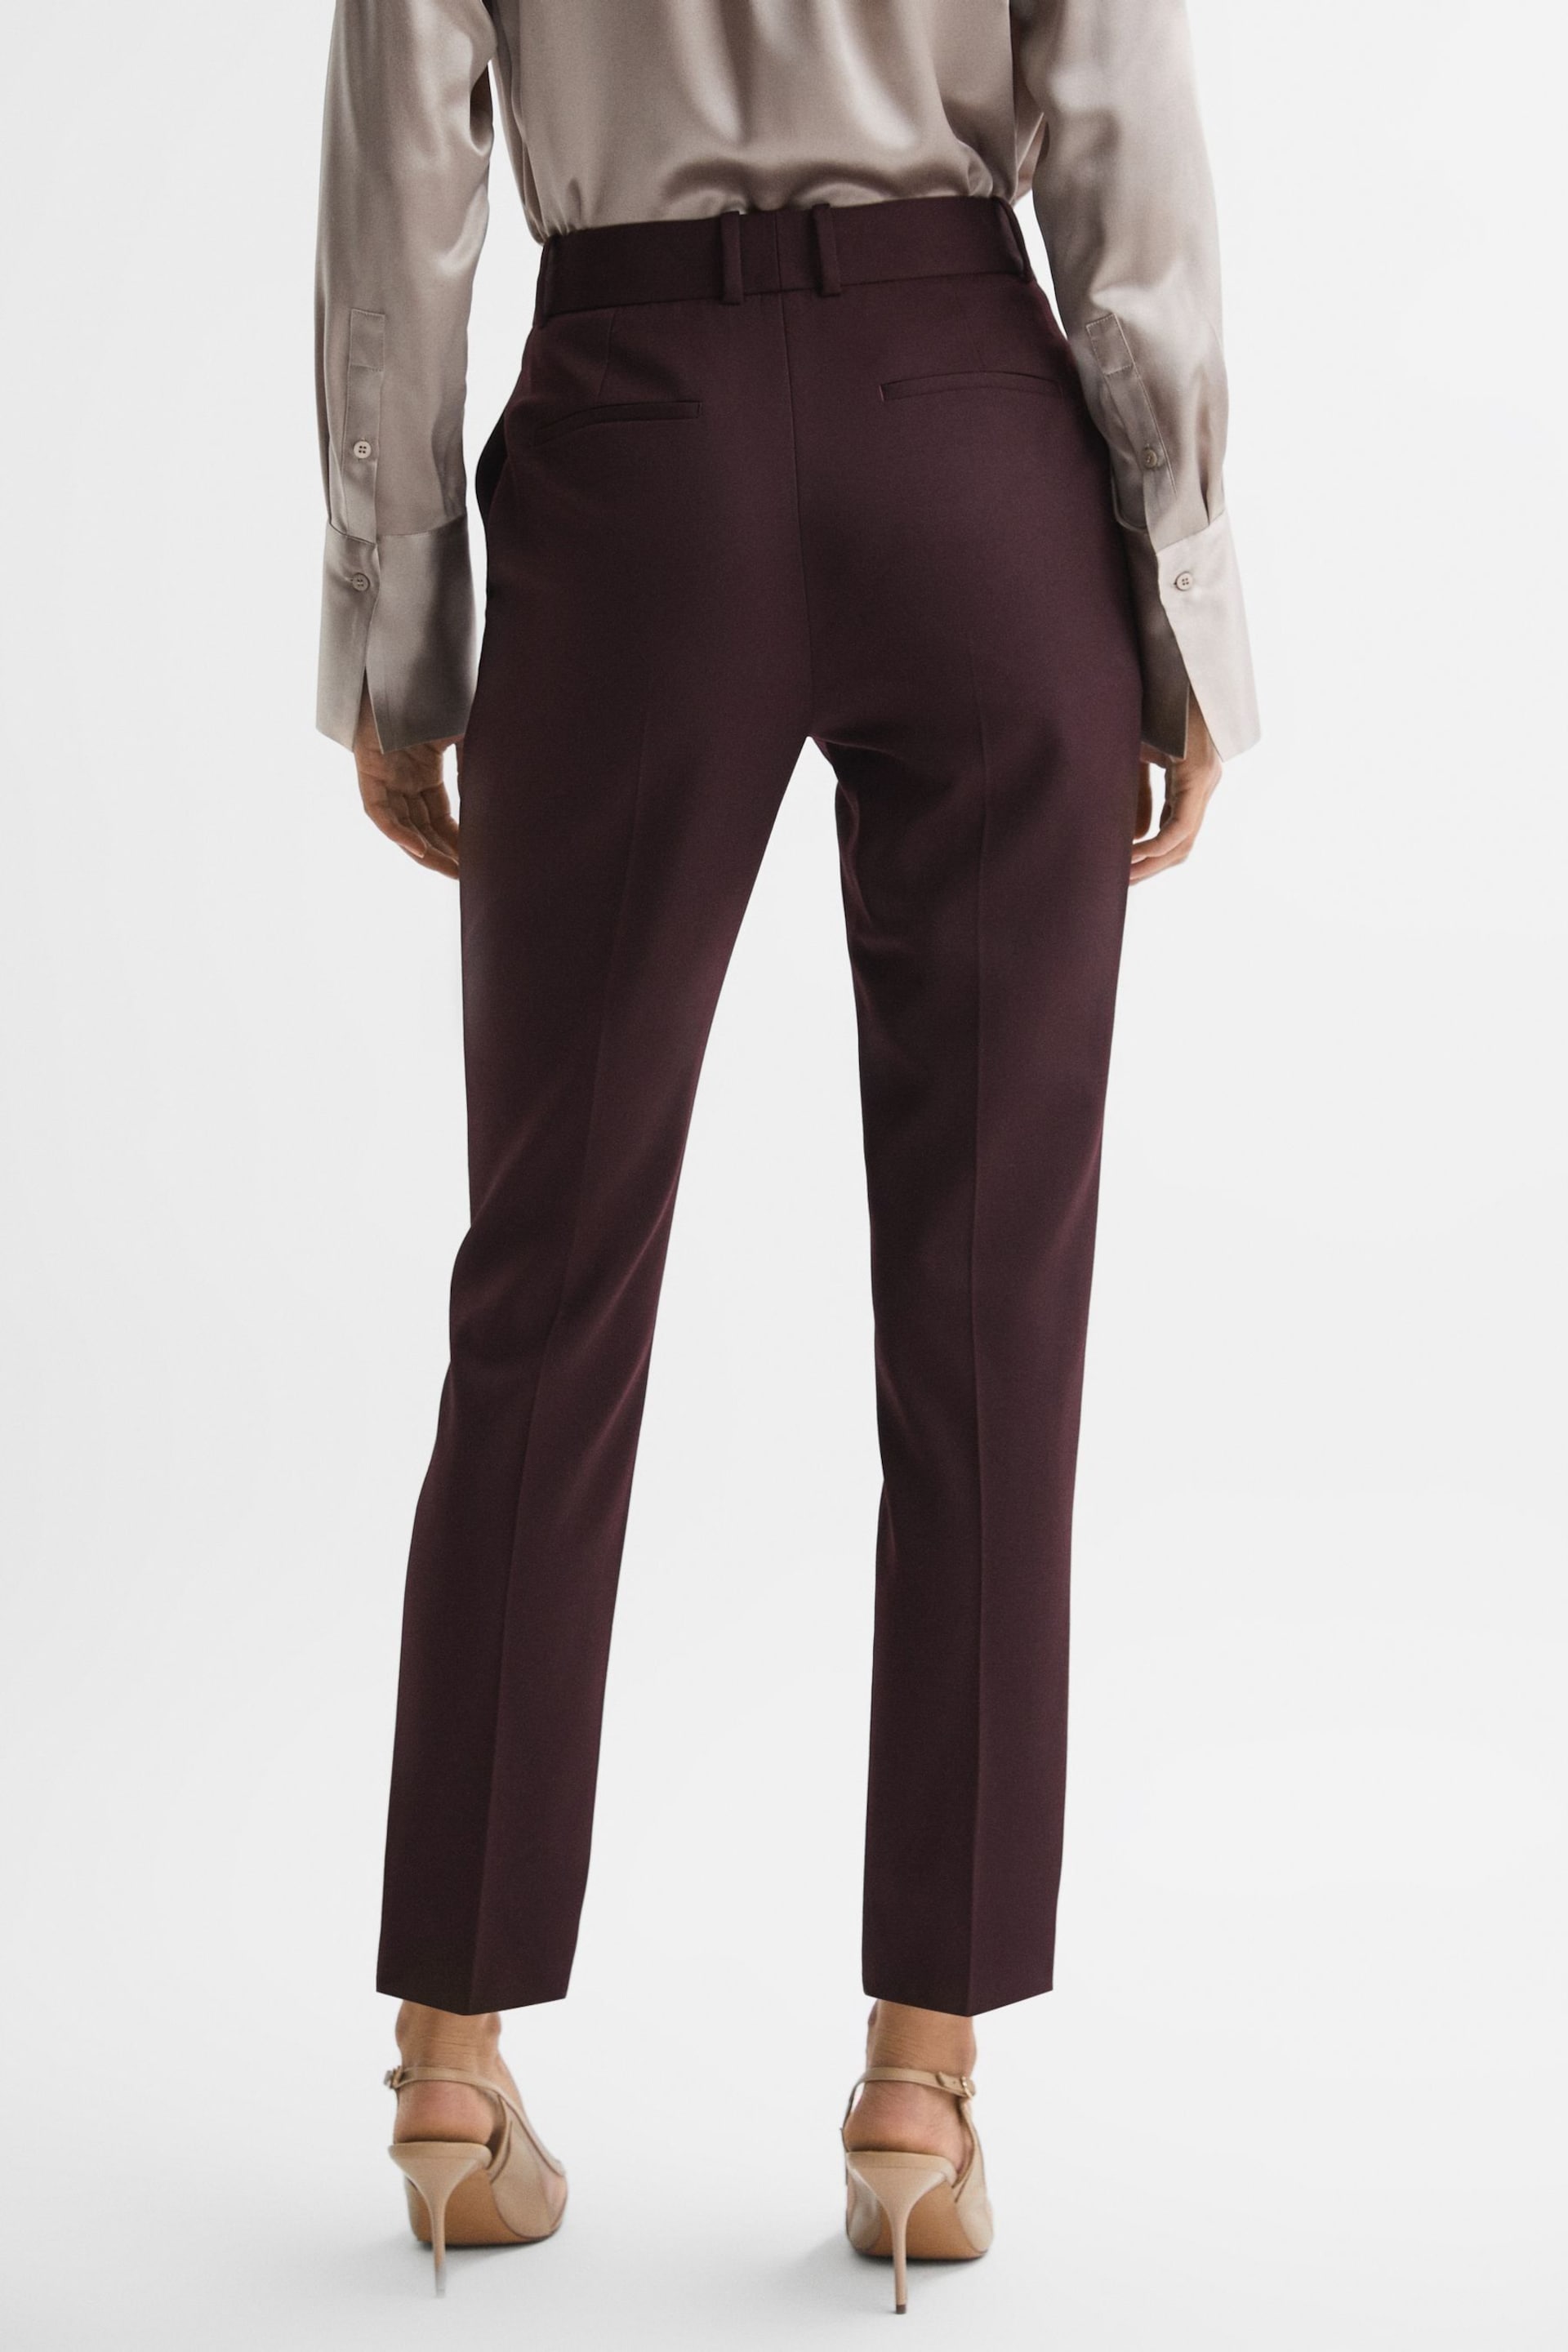 Reiss Berry Jade Slim Slim Fit Wool Blend Mid Rise Suit Trousers - Image 5 of 5